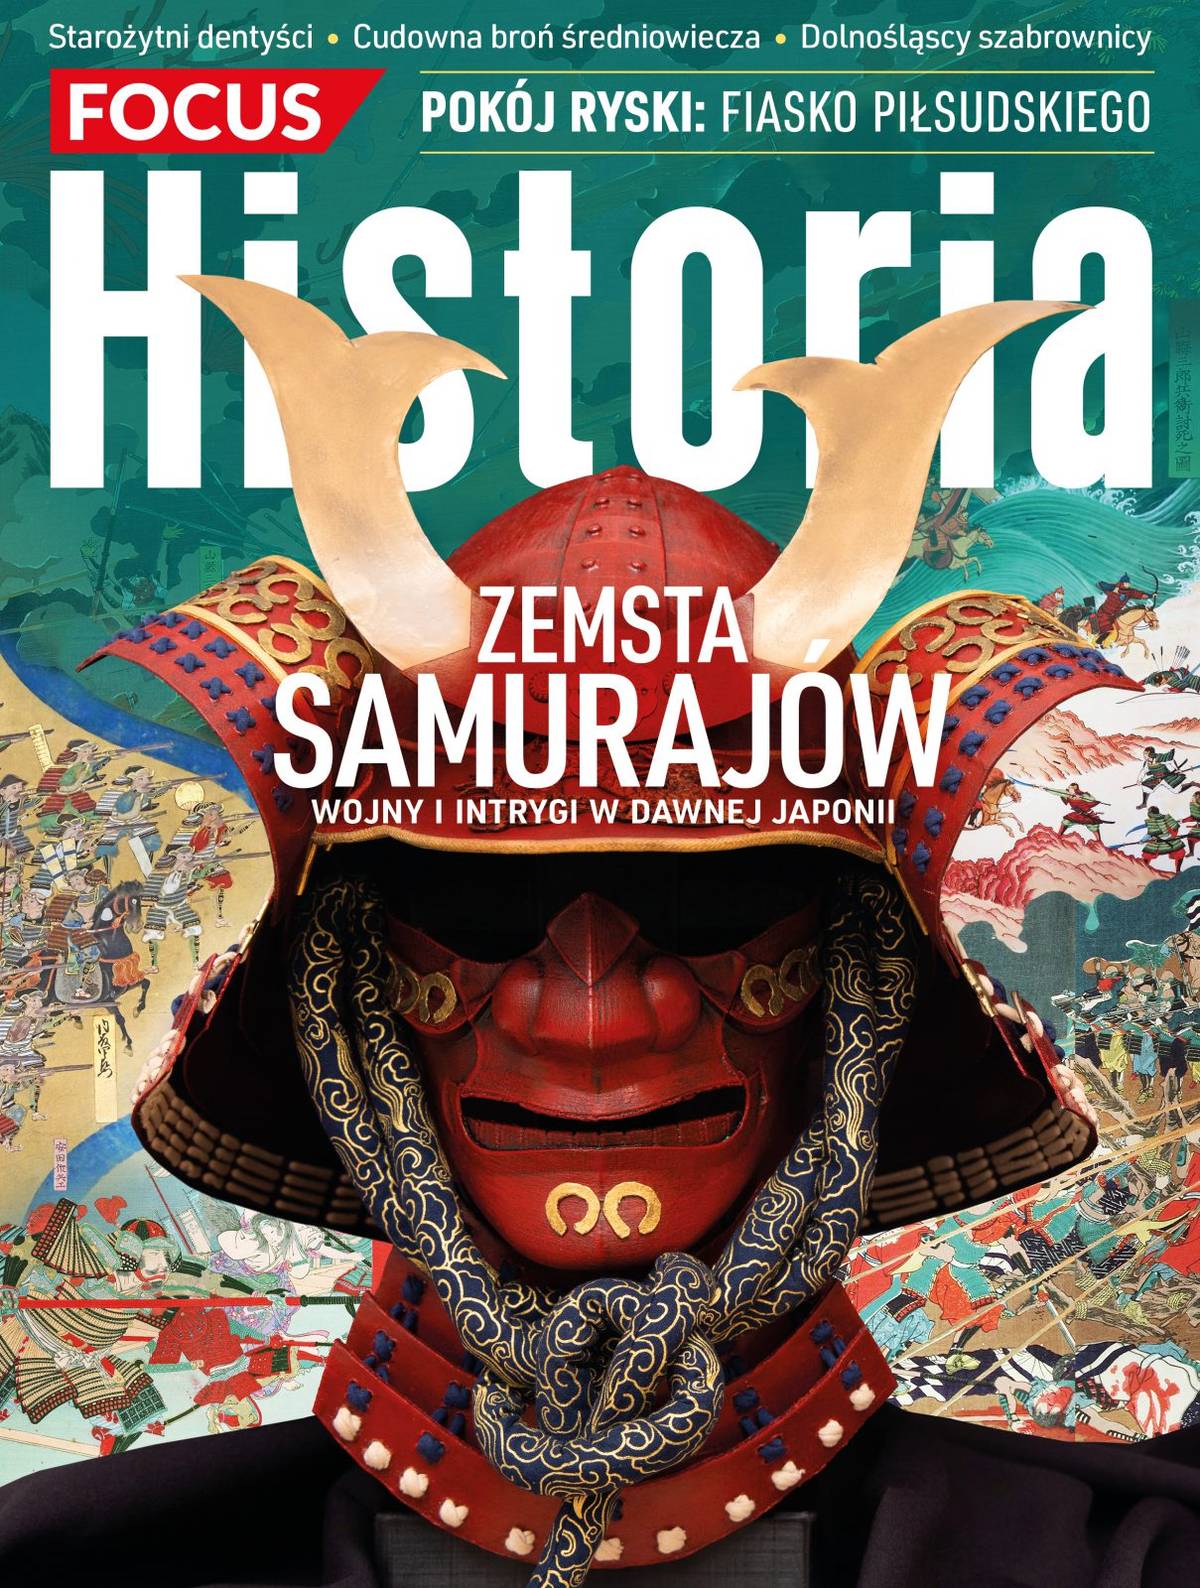 Wyprawa w świat Samurajów. Ile prawdy jest w legendzie o zemście 47 roninów?